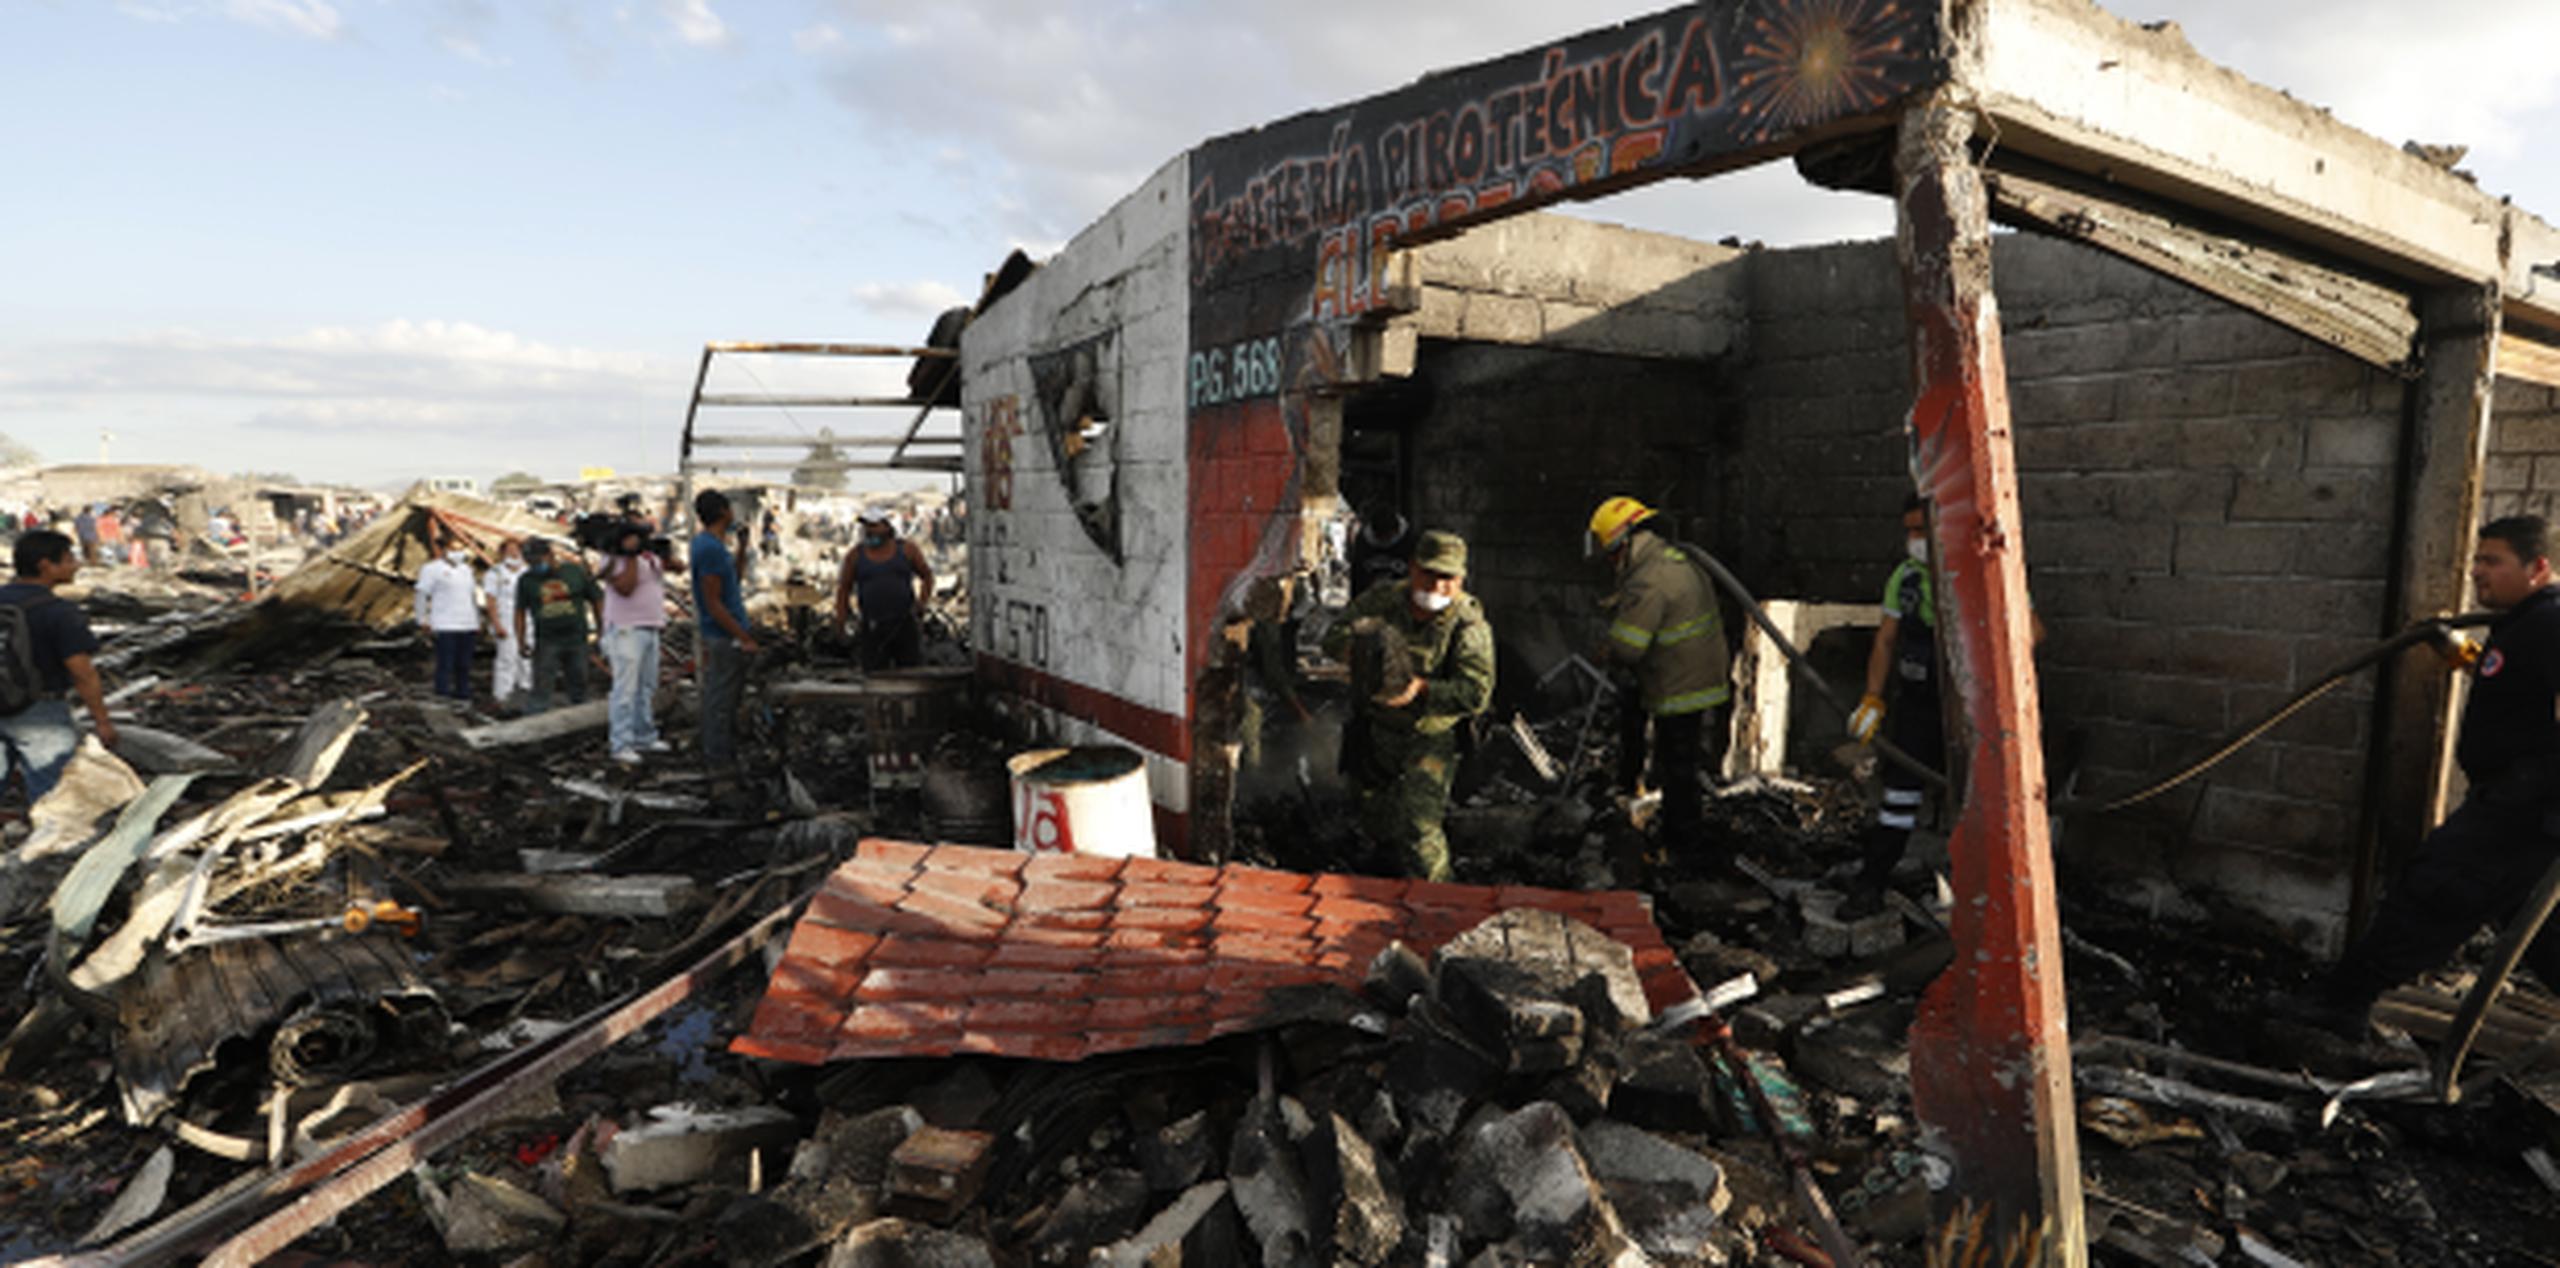 Bomberos y rescatistas continuaban hoy la búsqueda de restos entre los escombros del mercado de pirotecnia de Tultepec, que quedó totalmente destruido por las explosiones. (AP/Eduardo Verdugo)
